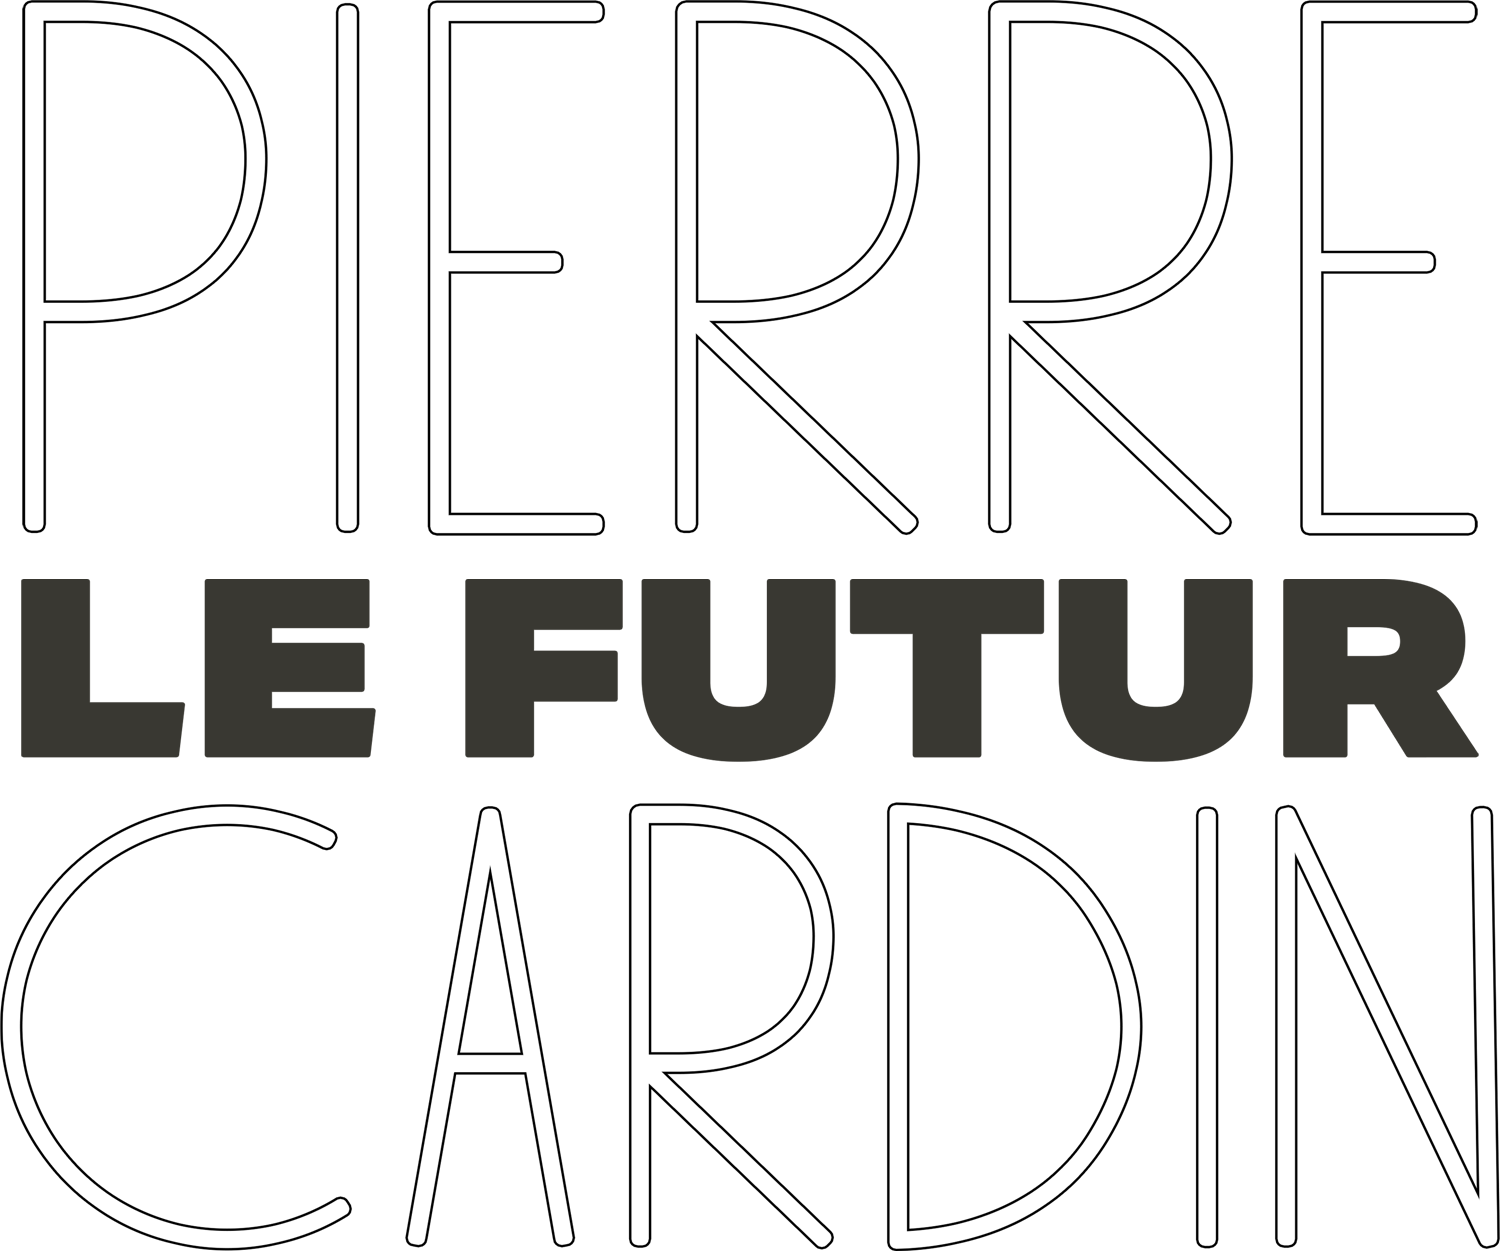 PierreCardin-LeFutur标志